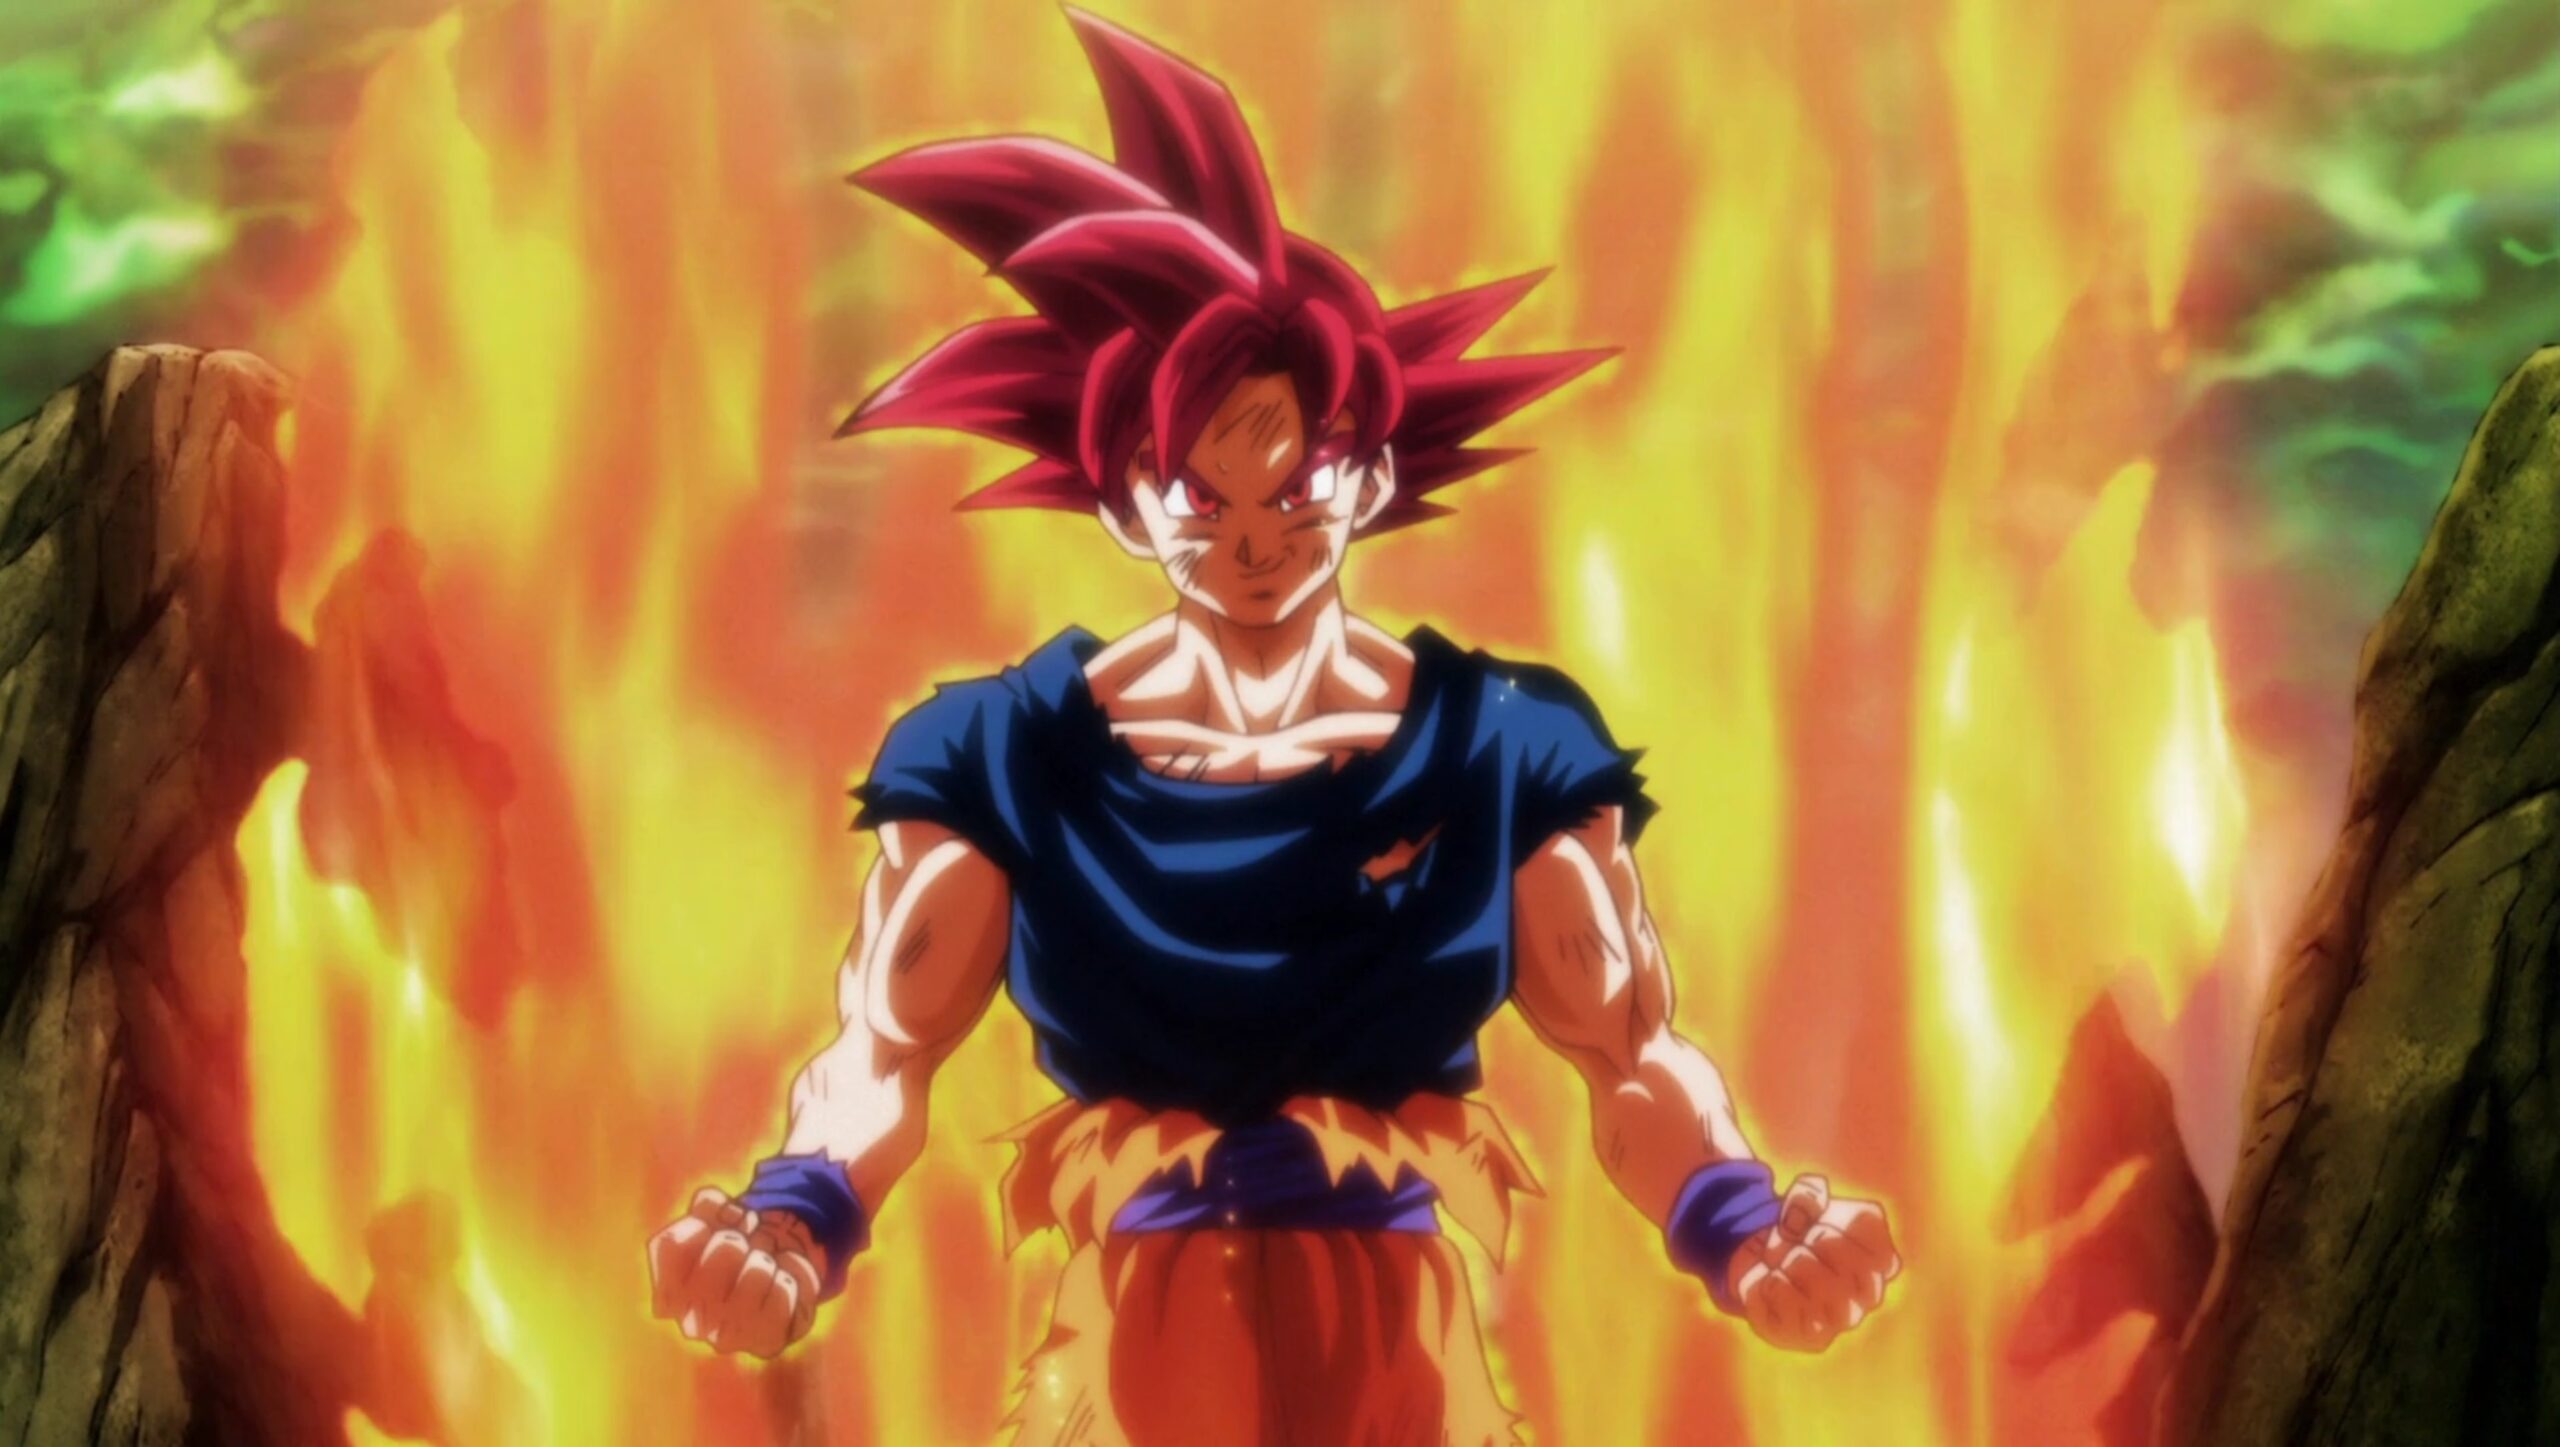 Goku in Super Saiyan God mode. 